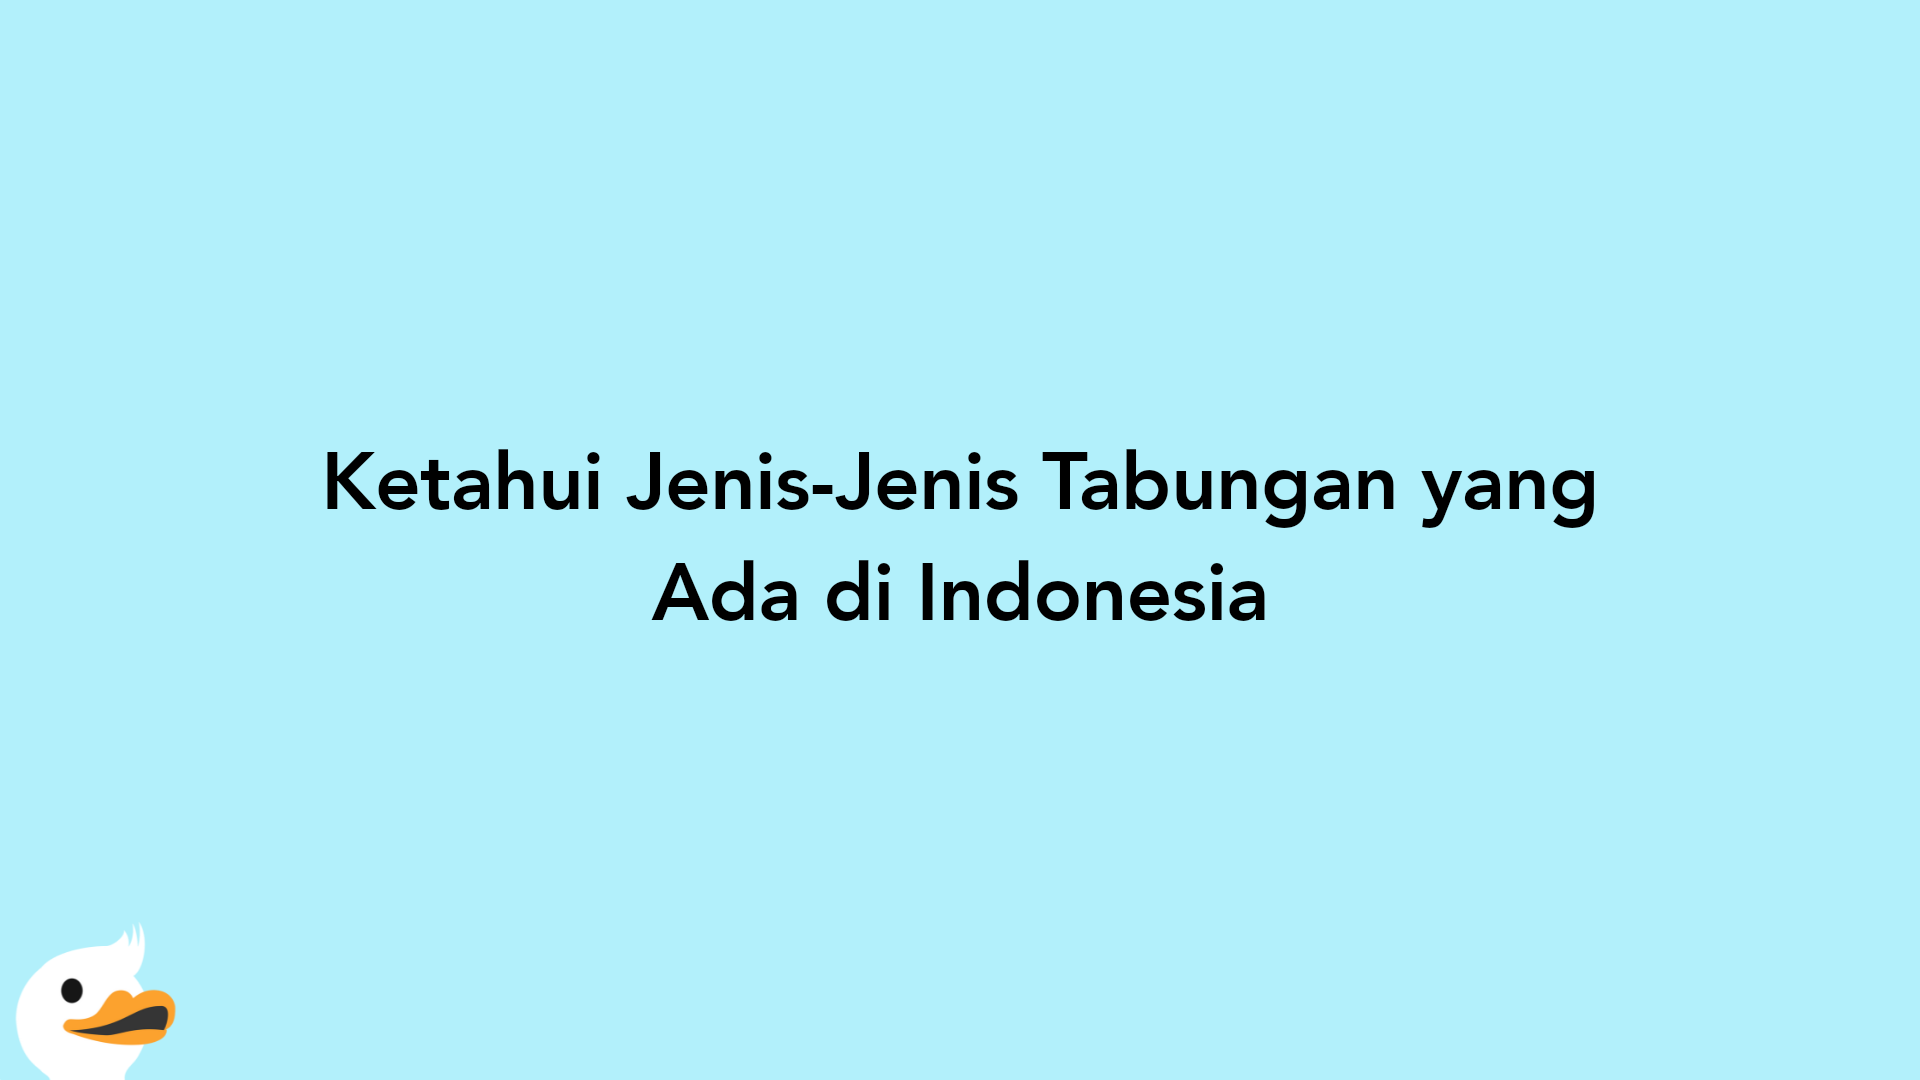 Ketahui Jenis-Jenis Tabungan yang Ada di Indonesia